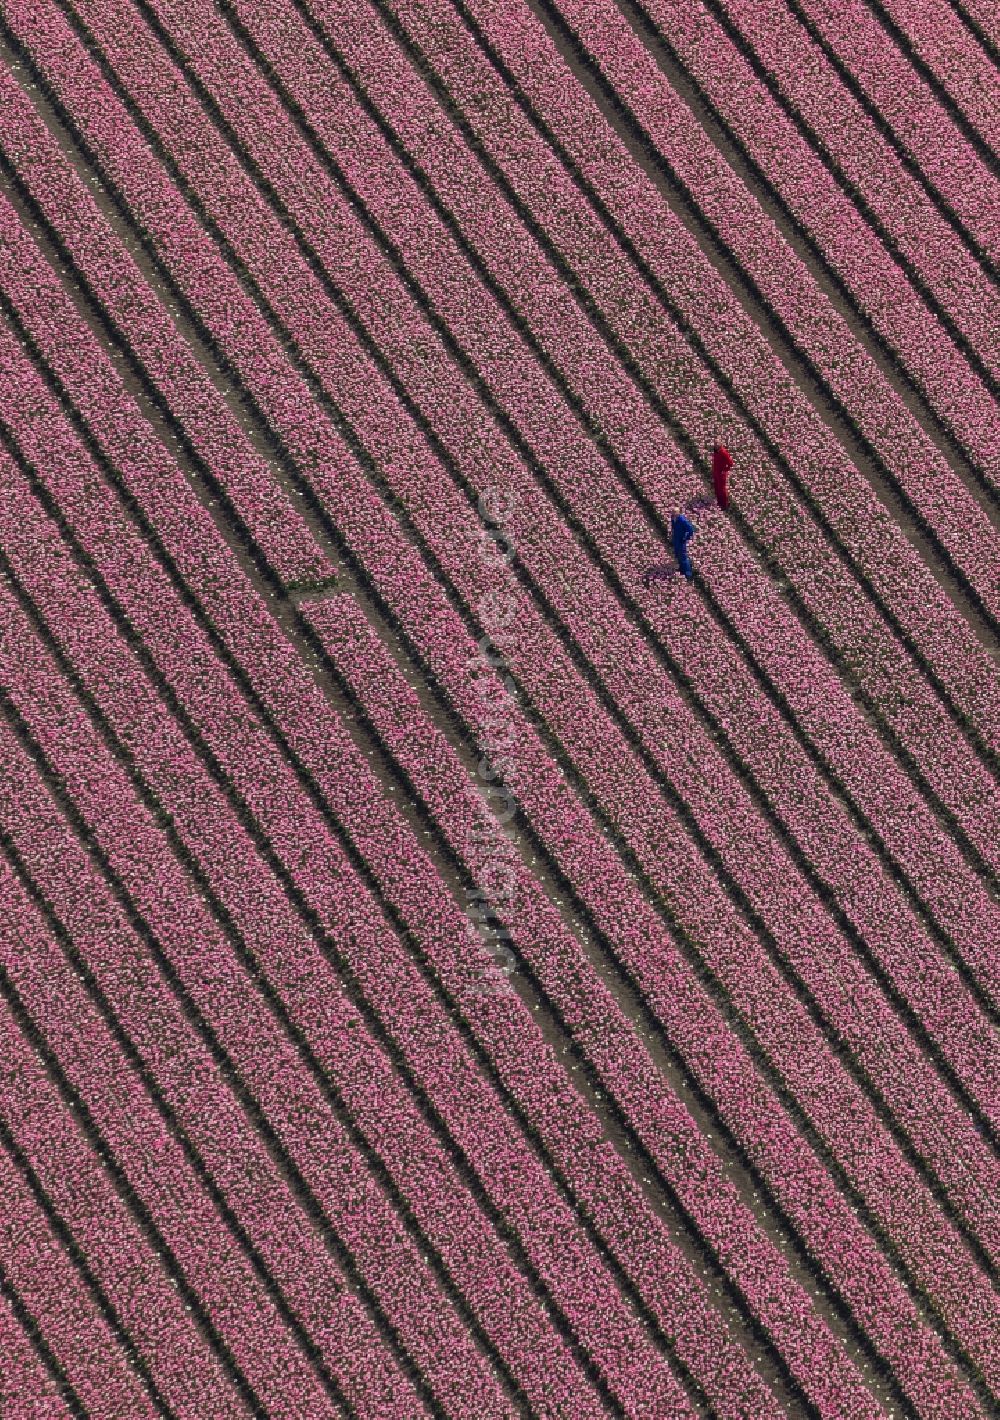 Luftbild Zuidoostbeemster - Landwirtschafts - Landschaft mit Tulpenfeldern zur Blumenproduktion bei Zuidoostbeemster in Nordholland in Holland / Niederlande